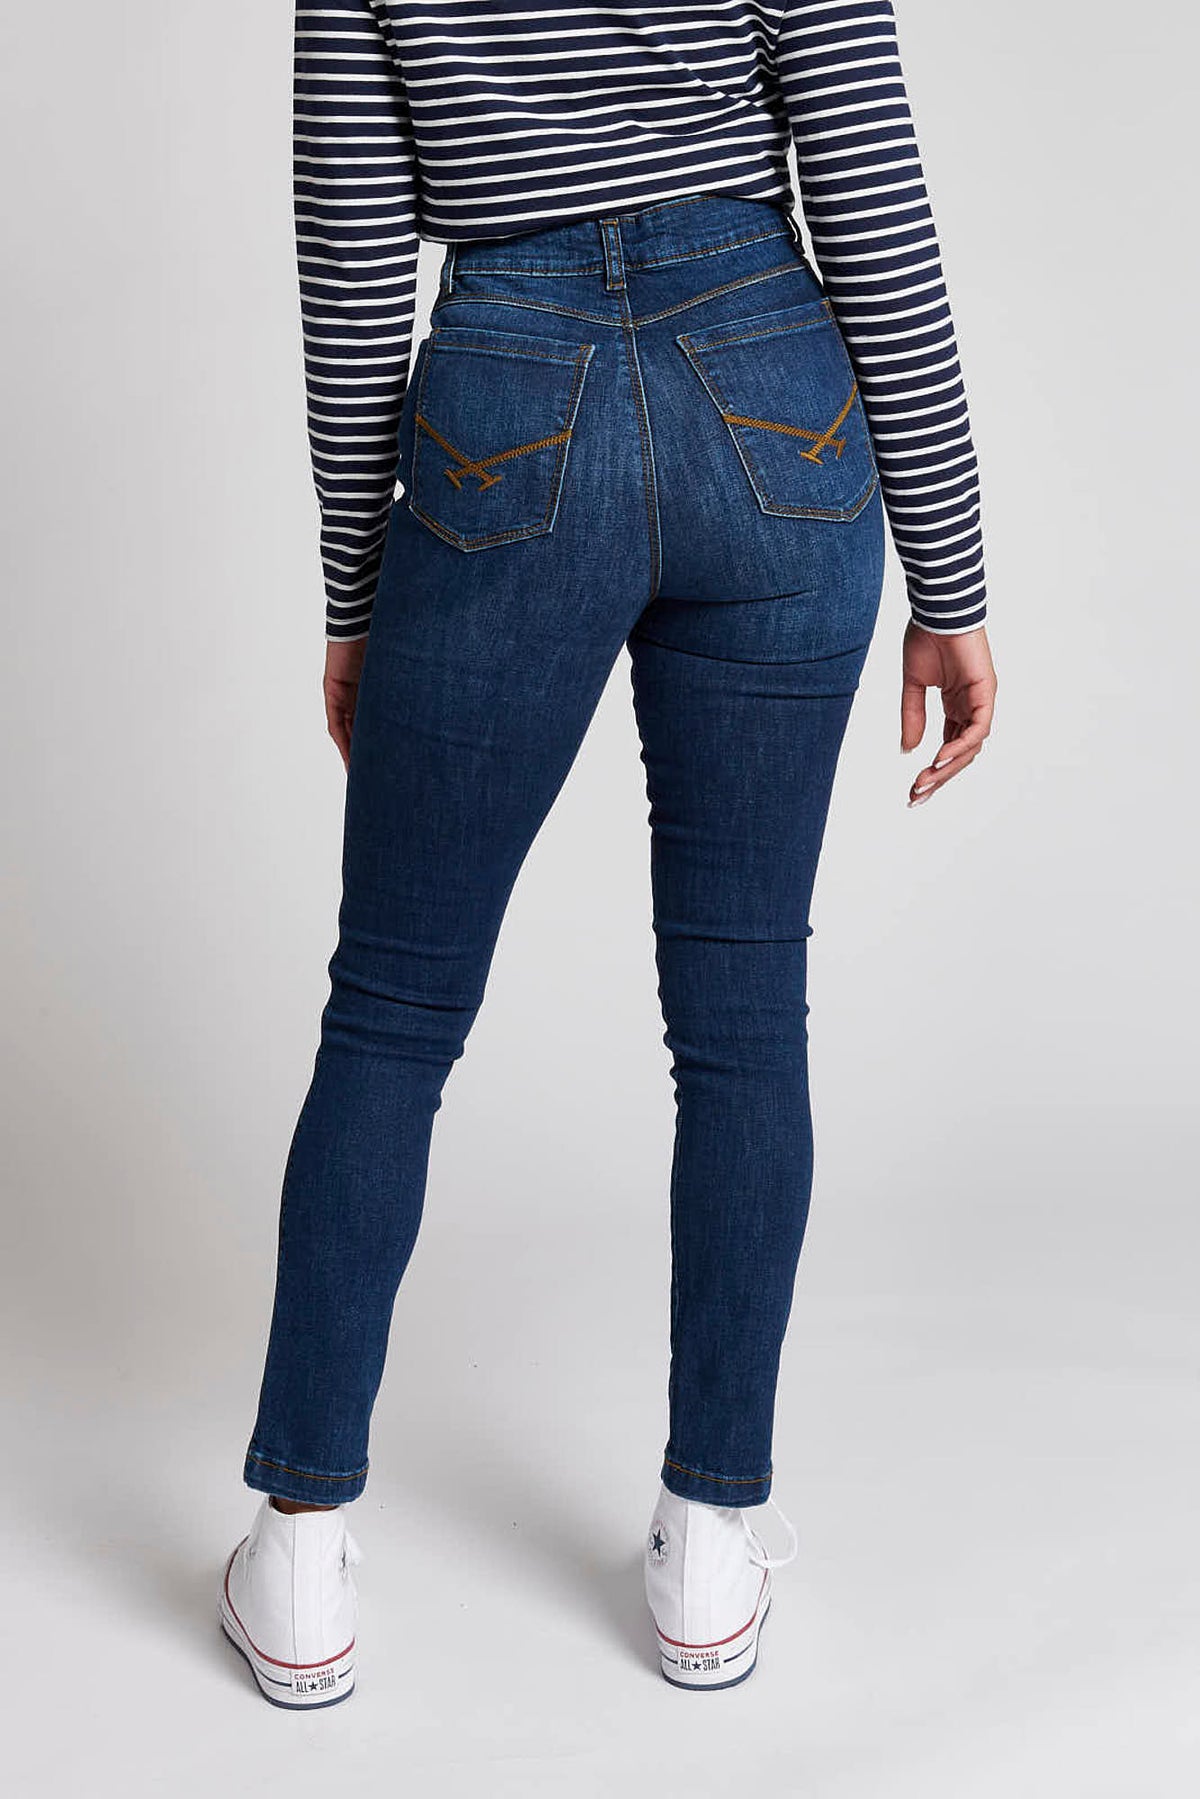 Womens Skinny Fit Denim Jeans in Vintage Wash